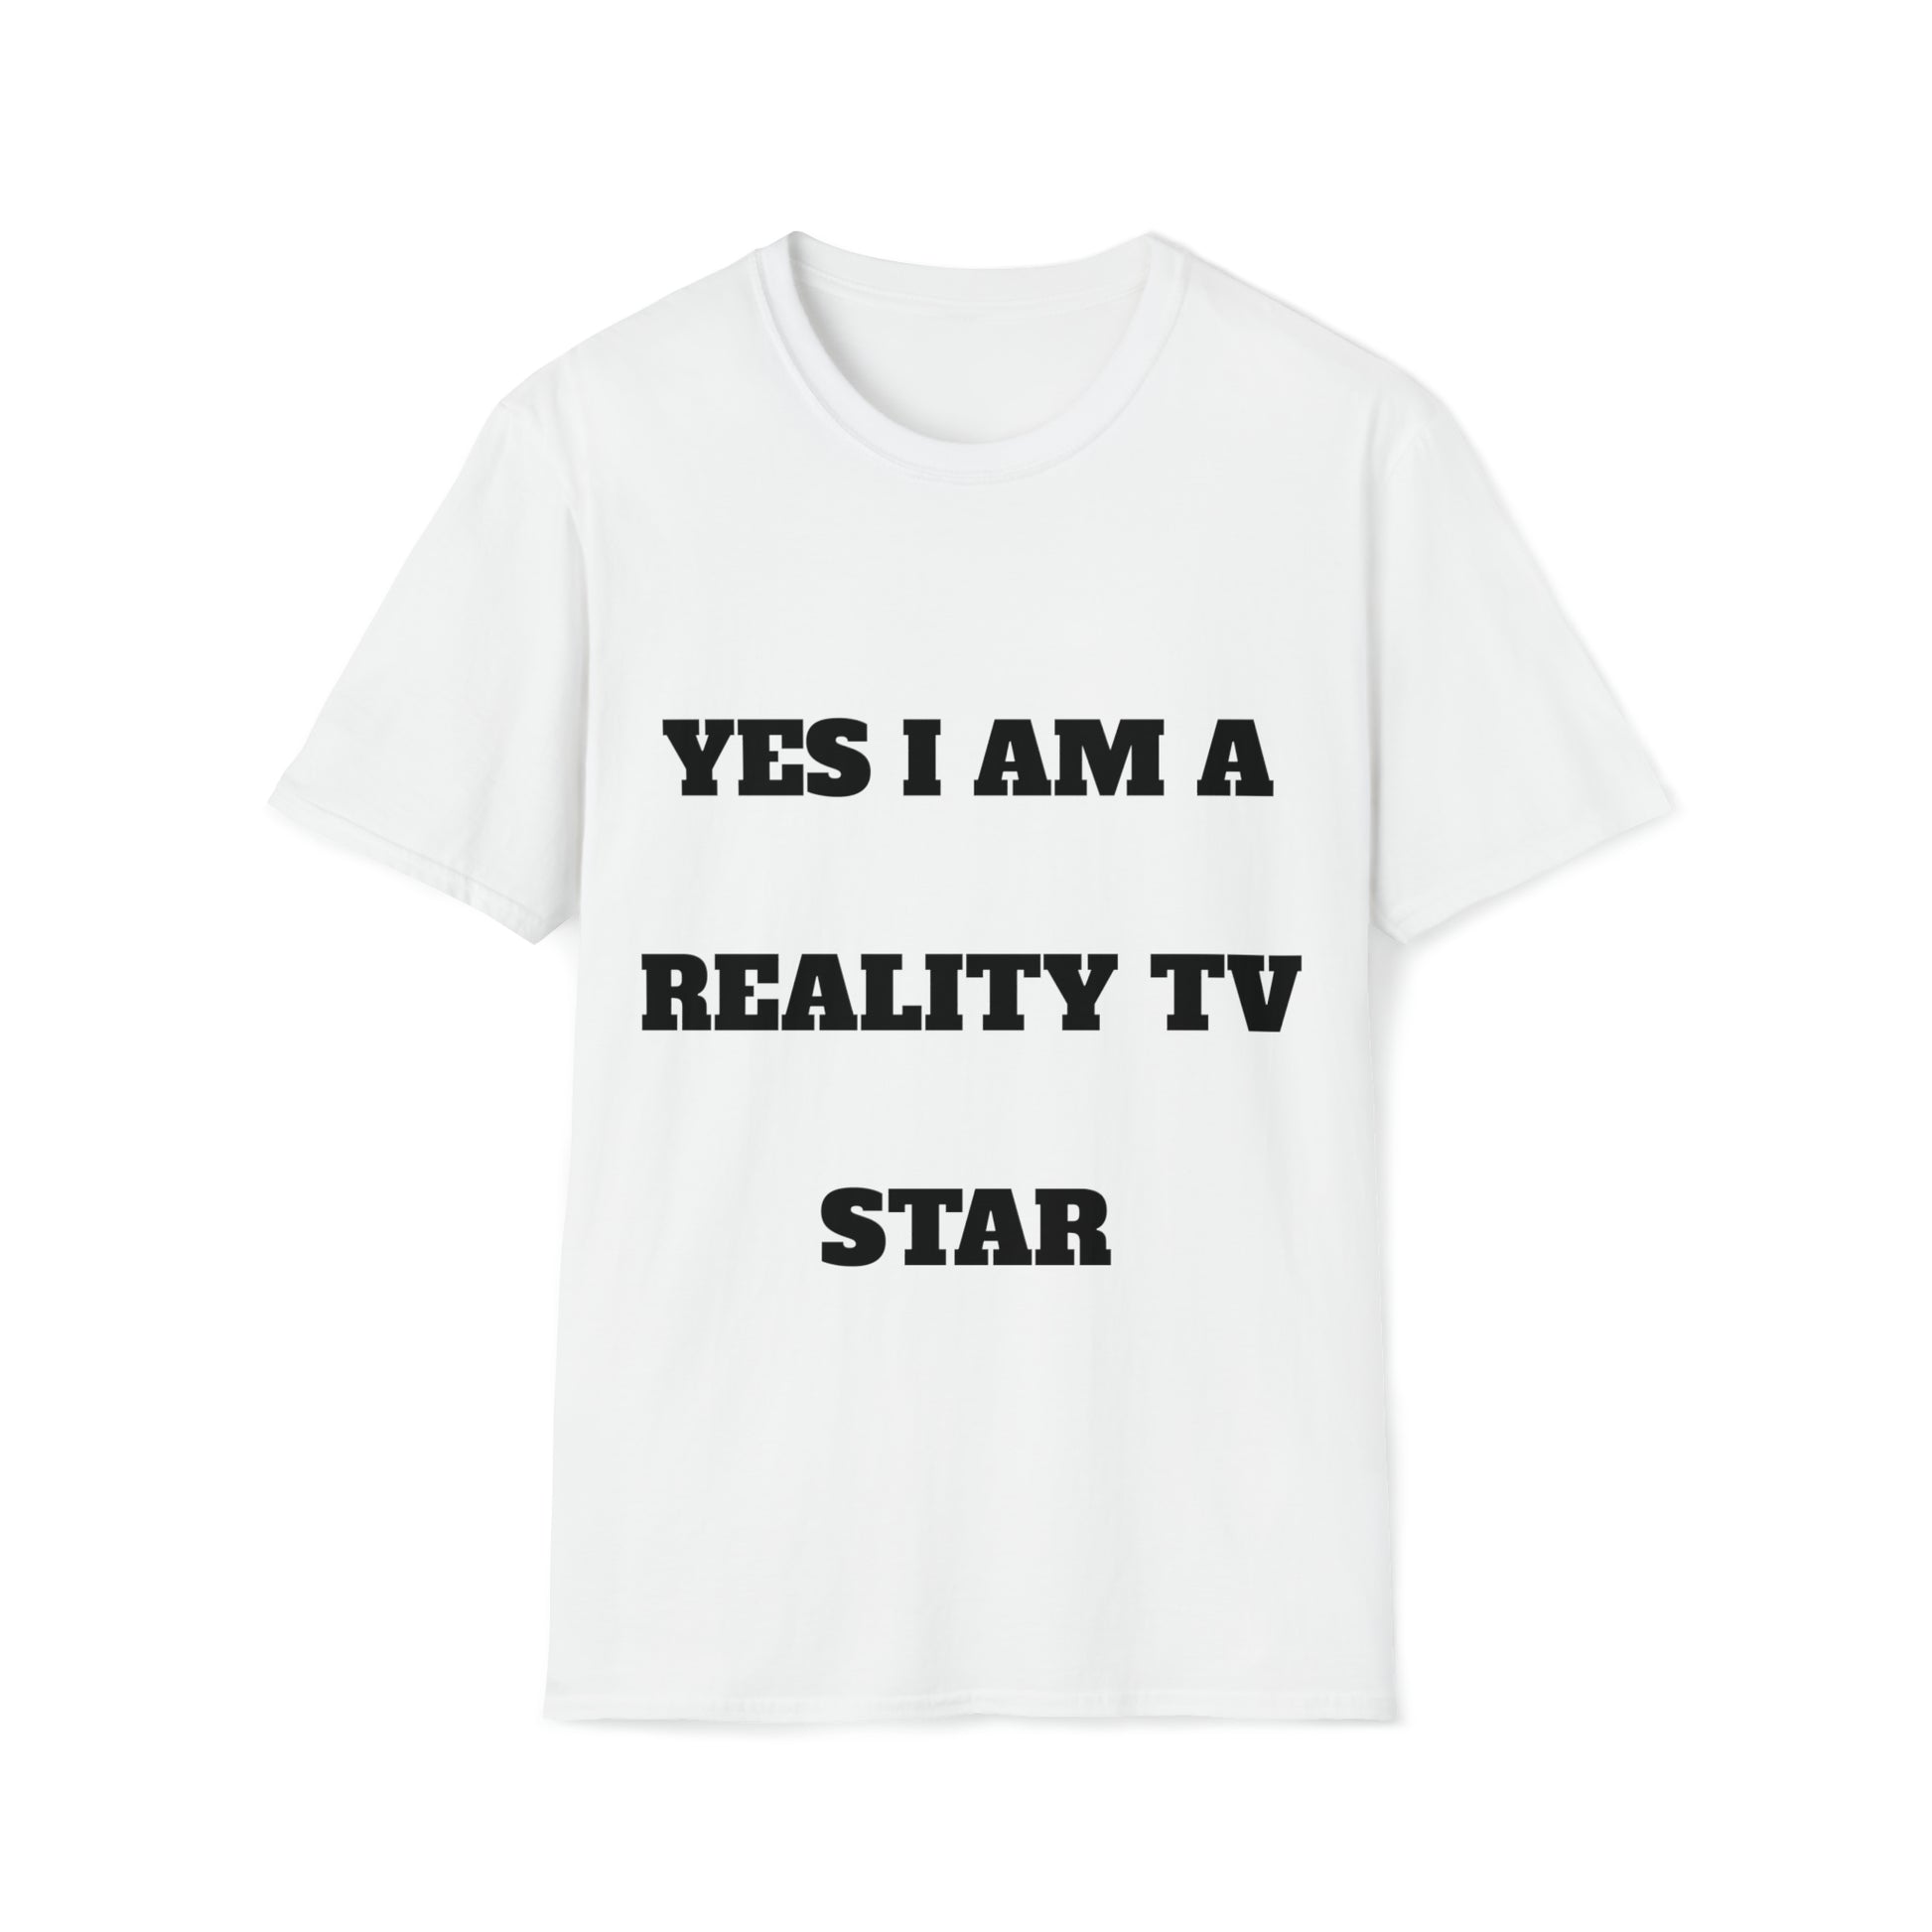 Yes I am a reality TV  star tshirt